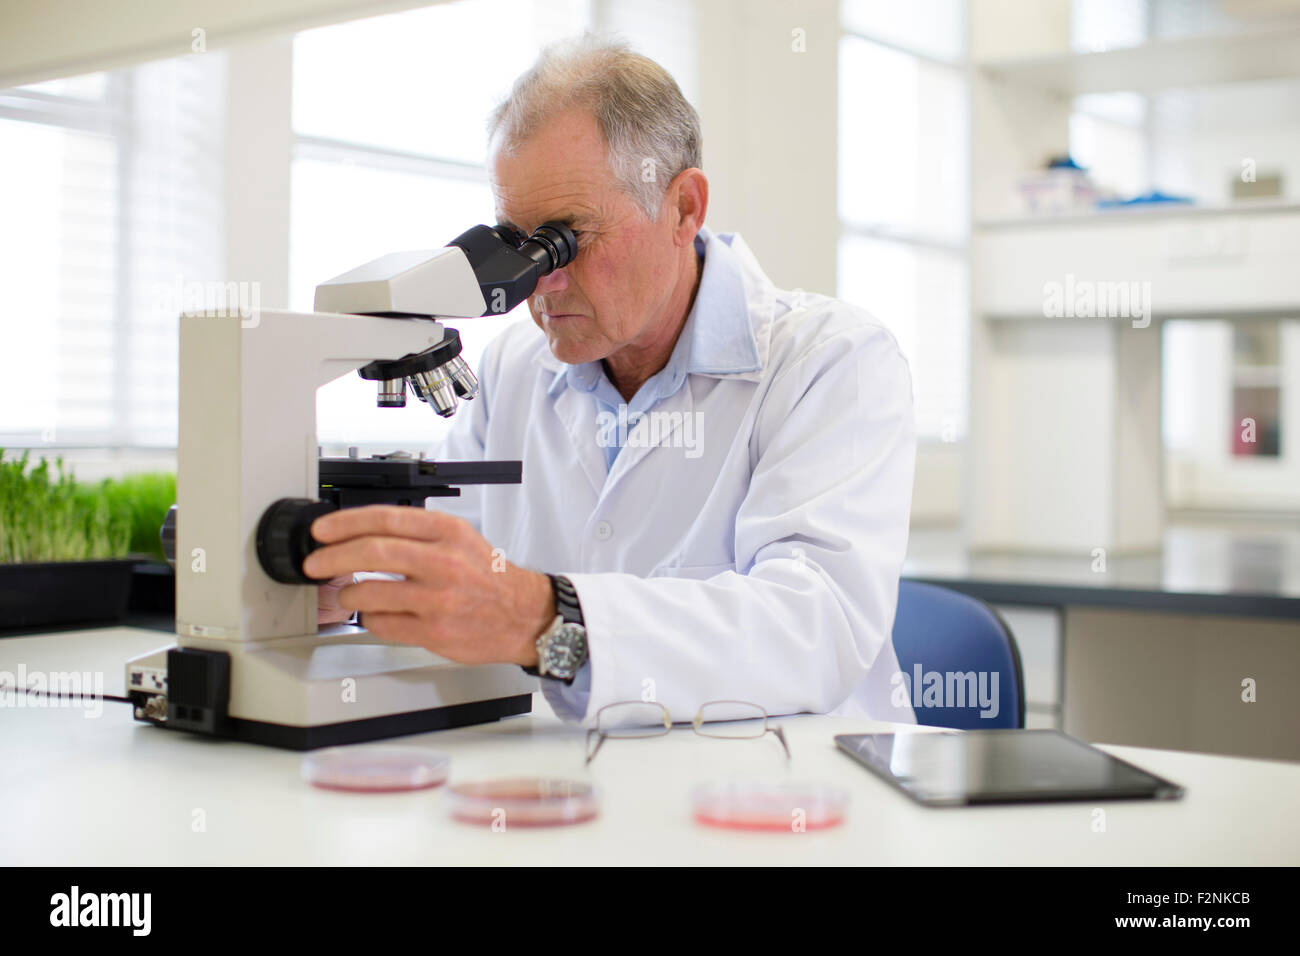 Caucasian scientist using microscope in laboratory Stock Photo